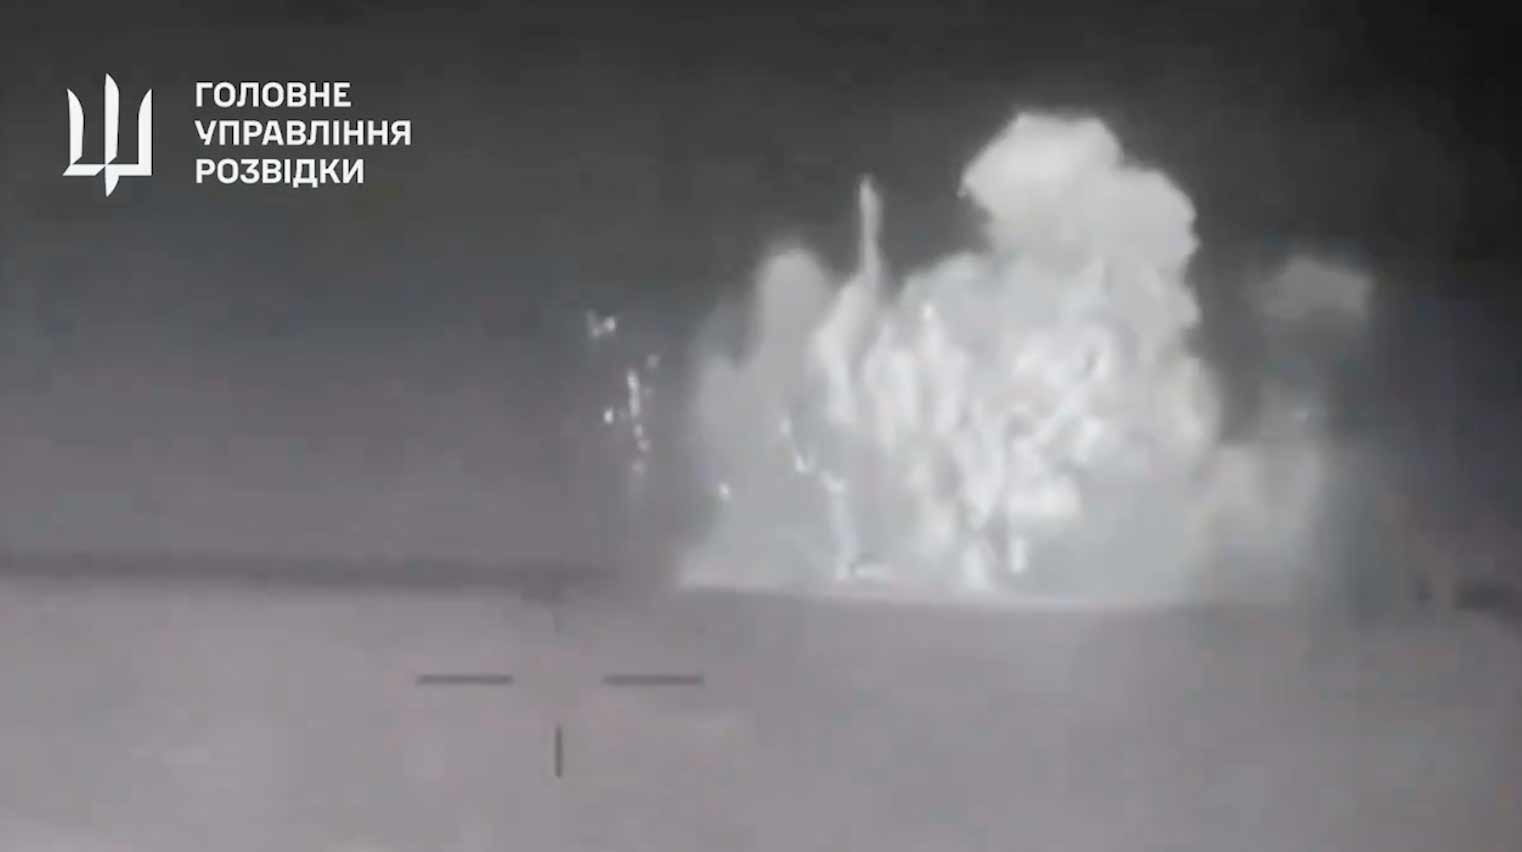 Nuovo video mostra l'esplosione che ha affondato la nave russa Sergey Kotov. Riproduzione Twitter @wartranslated